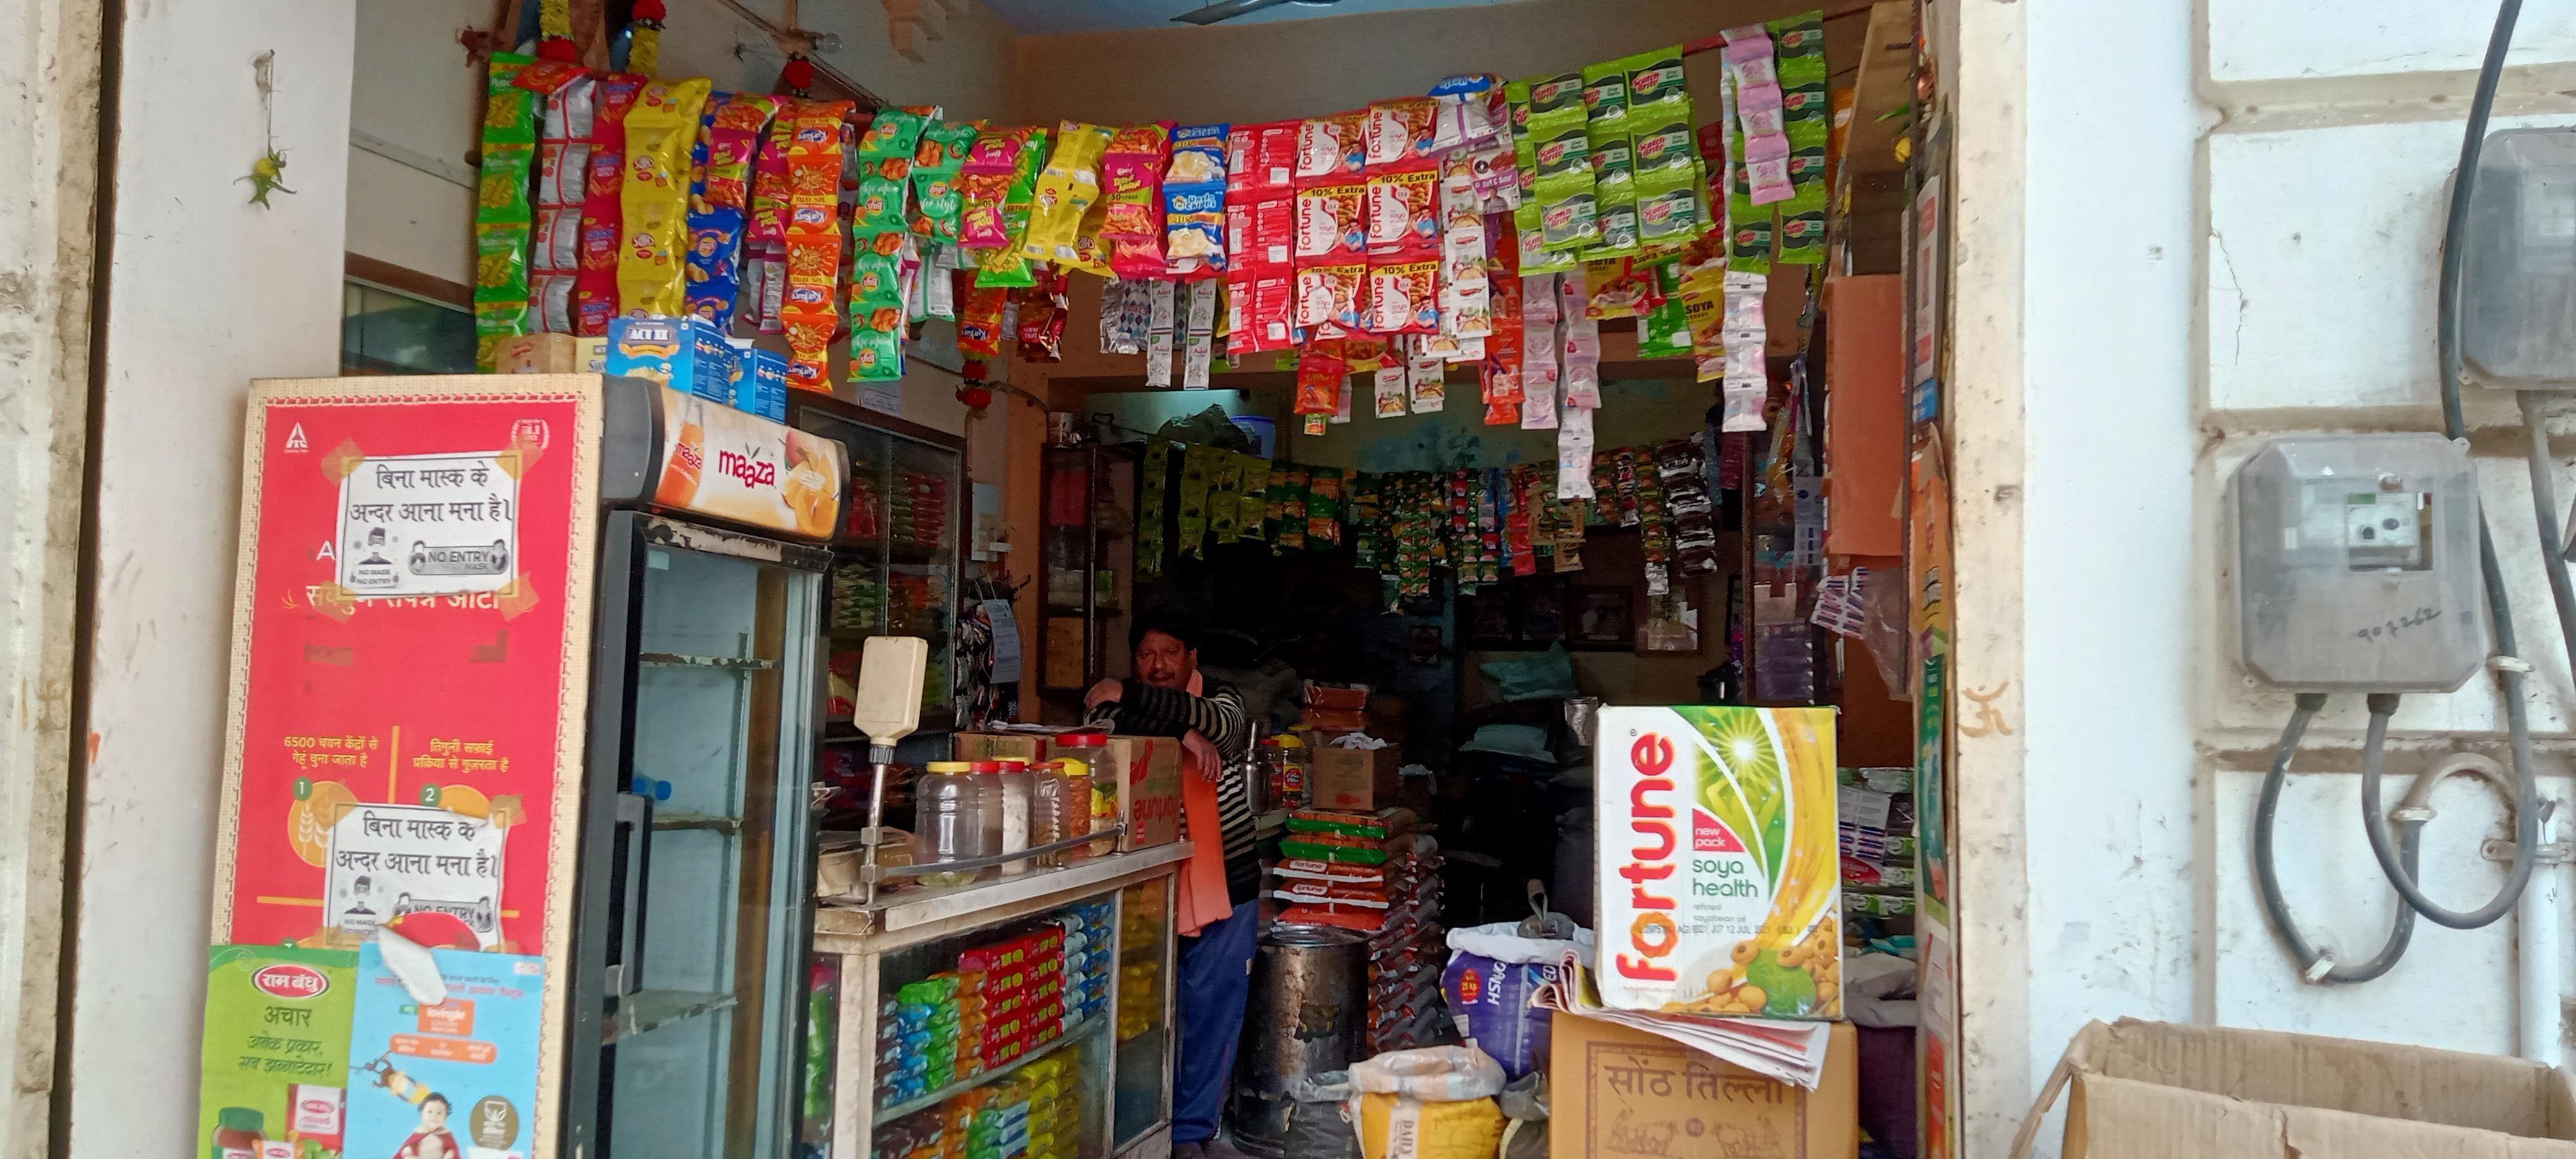 maa kamakhya general store